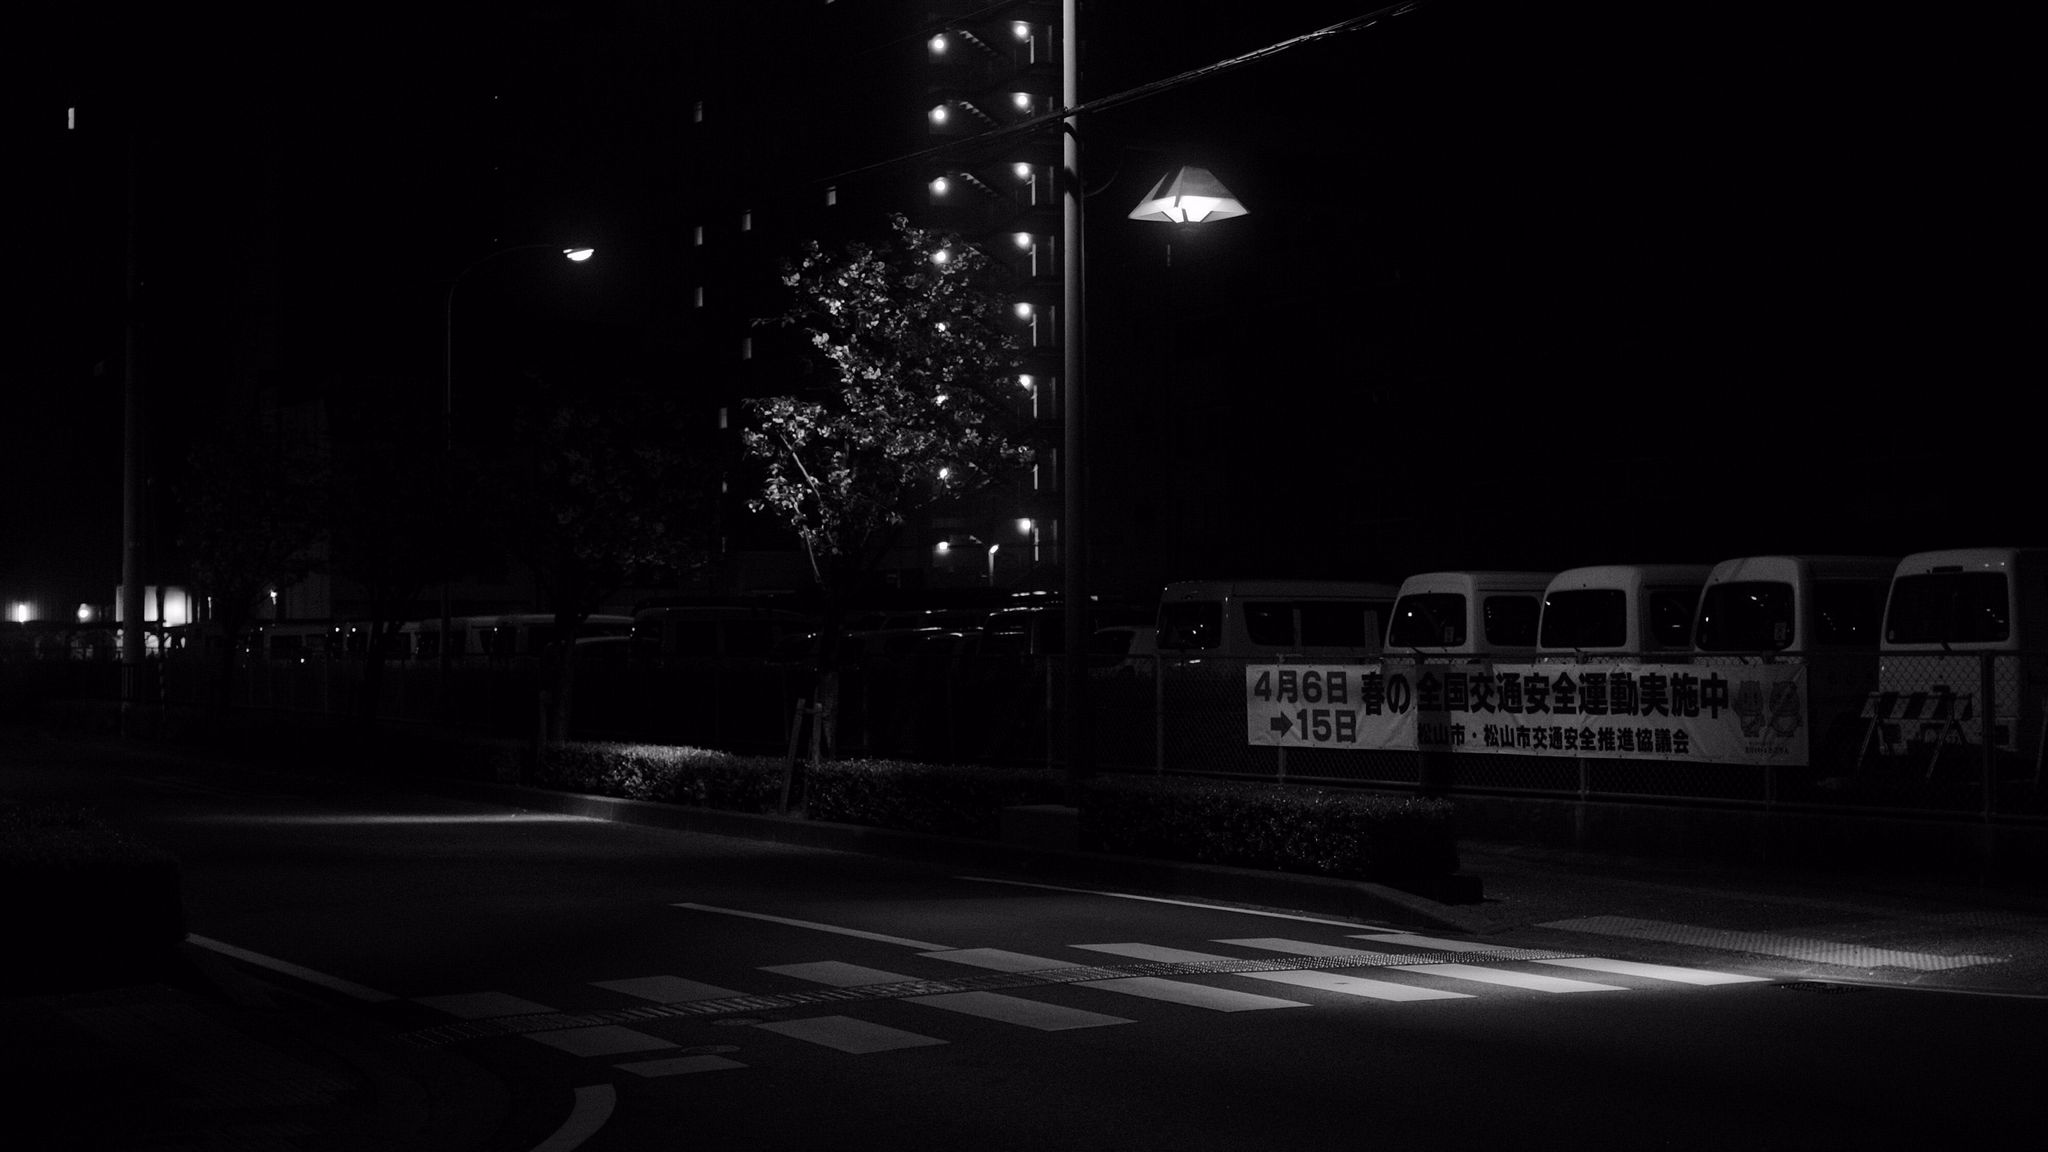 City night: Những tán đèn lấp lánh cùng ánh đèn pha xe huyên náo đều được tái hiện tuyệt đẹp trong bức ảnh liên quan đến City night. Hãy để chúng giúp bạn khám phá và cảm nhận sự sống động của những khu phố đêm sôi động.